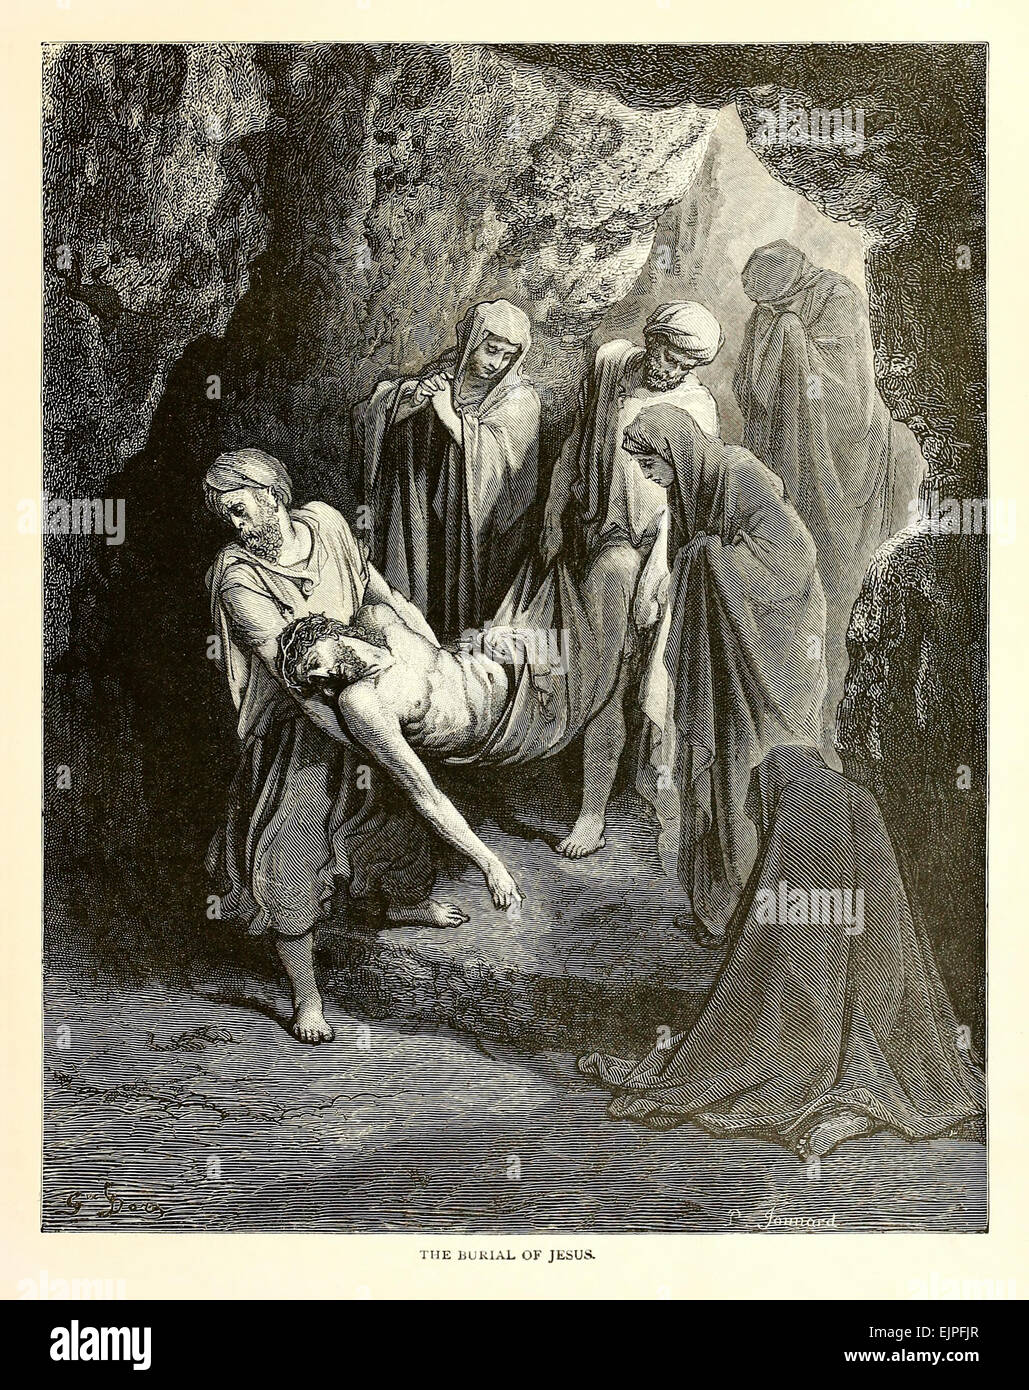 Illustration par Paul Gustave Doré (1832-1883) à partir de 1880 édition de la Bible. Voir la description pour plus d'informations. Banque D'Images